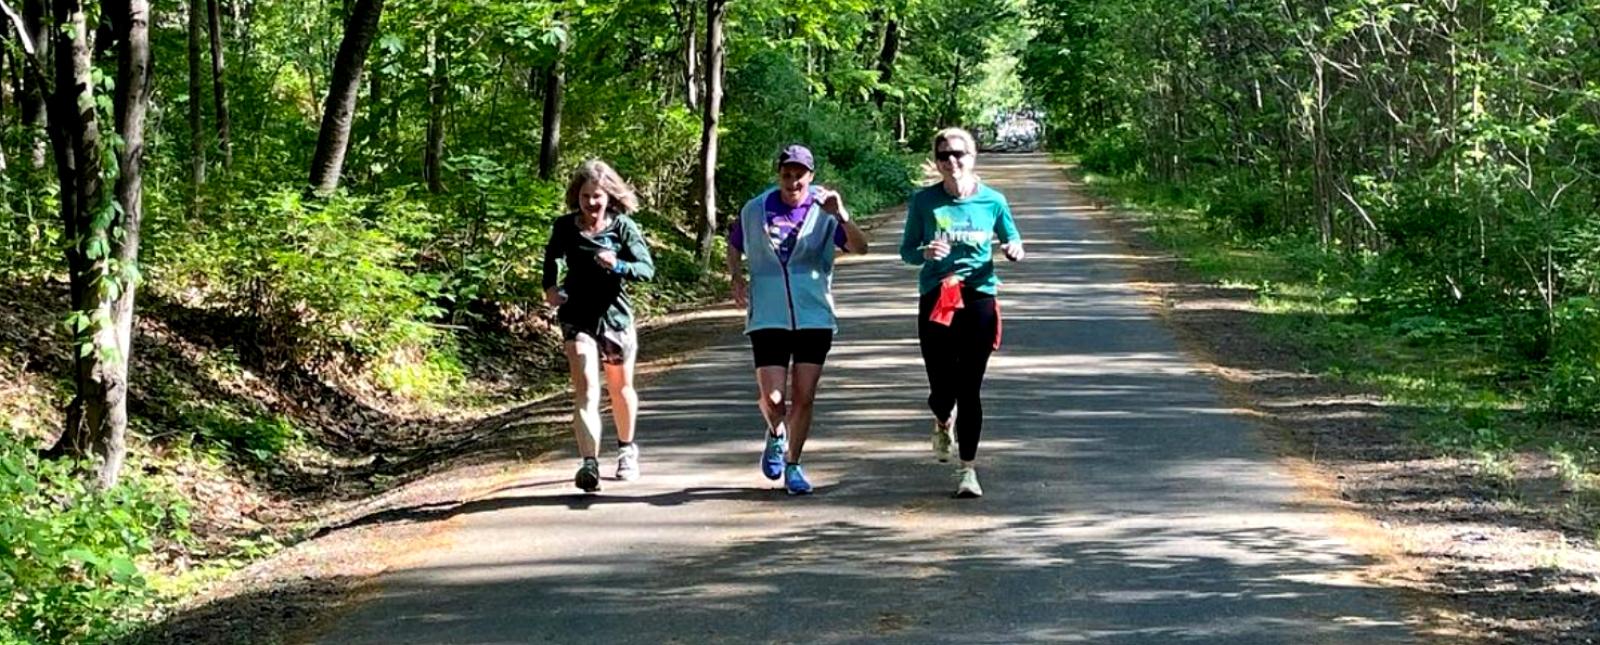 Tres mujeres corriendo por un camino en el bosque